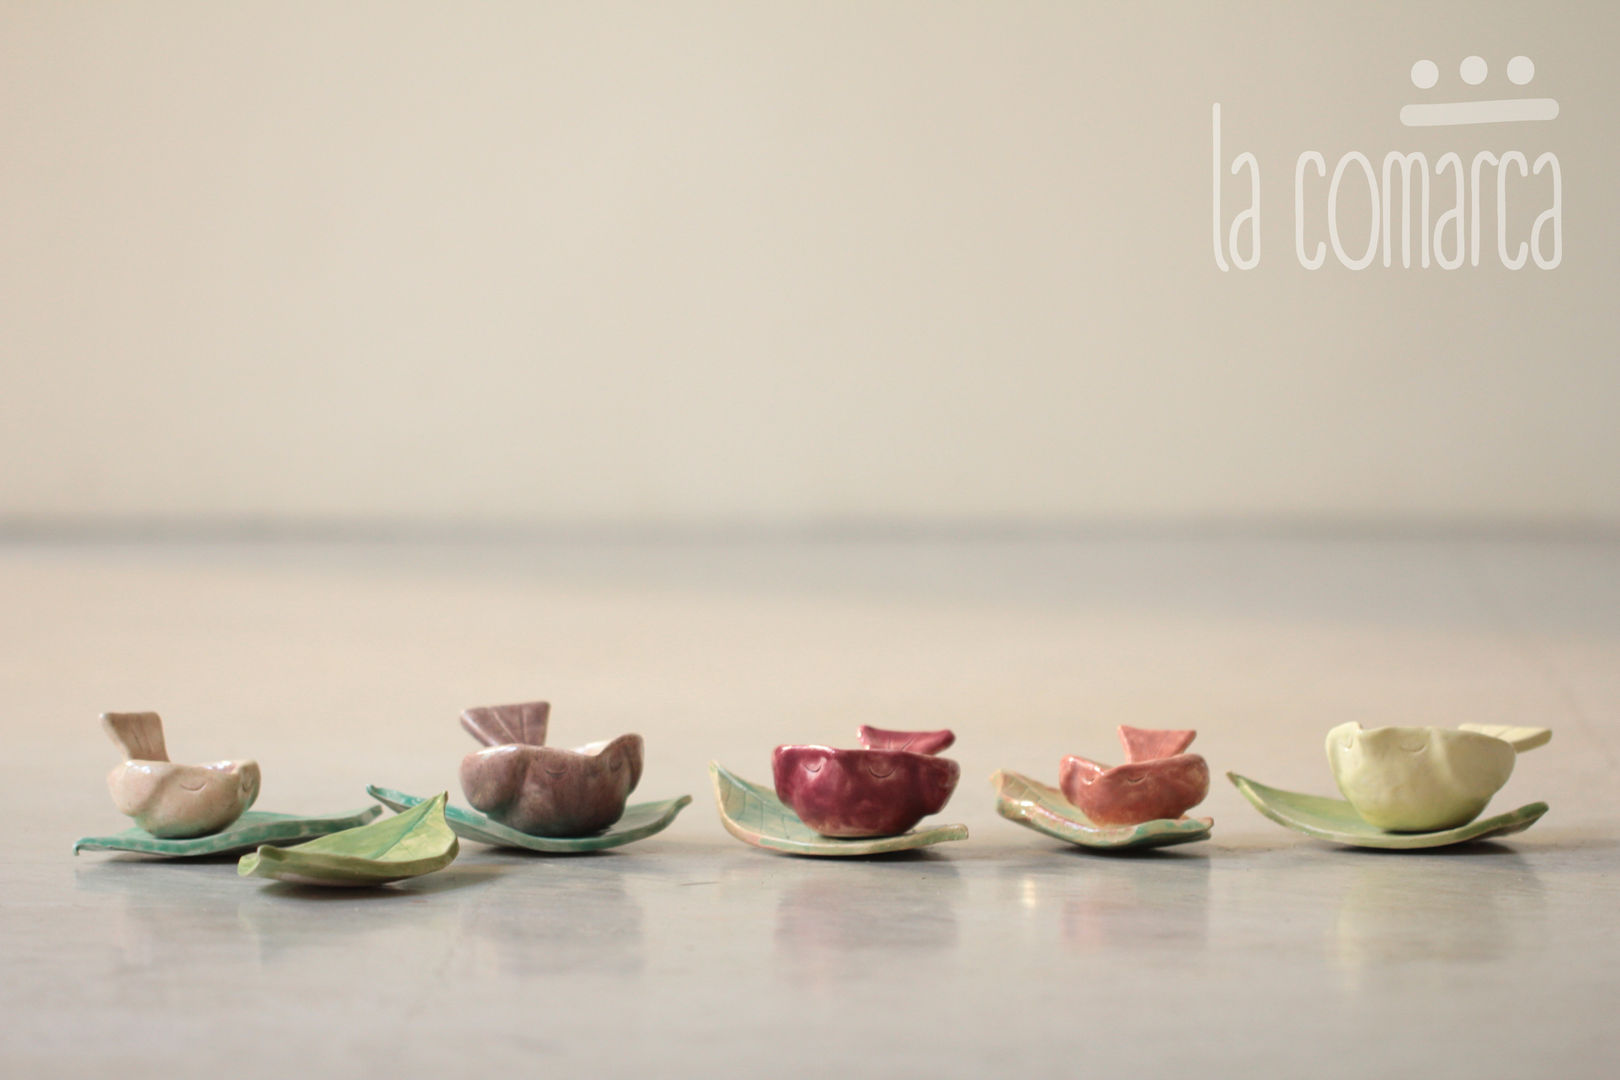 Objetos de decoración en cerámica, La comarca La comarca مطبخ Kitchen utensils